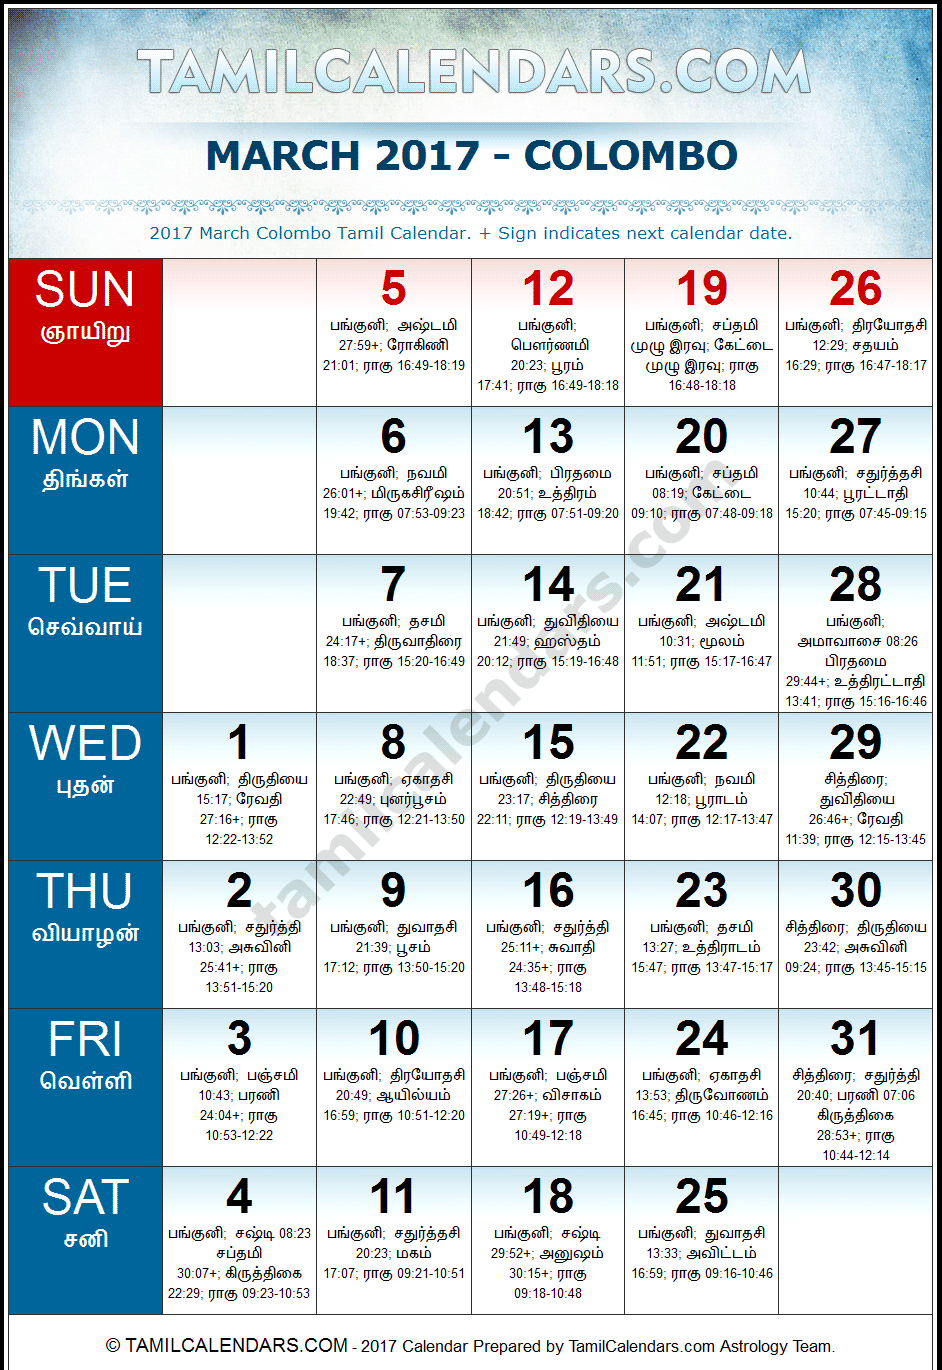 March 2017 Tamil Calendar for Sri Lanka (Colombo)